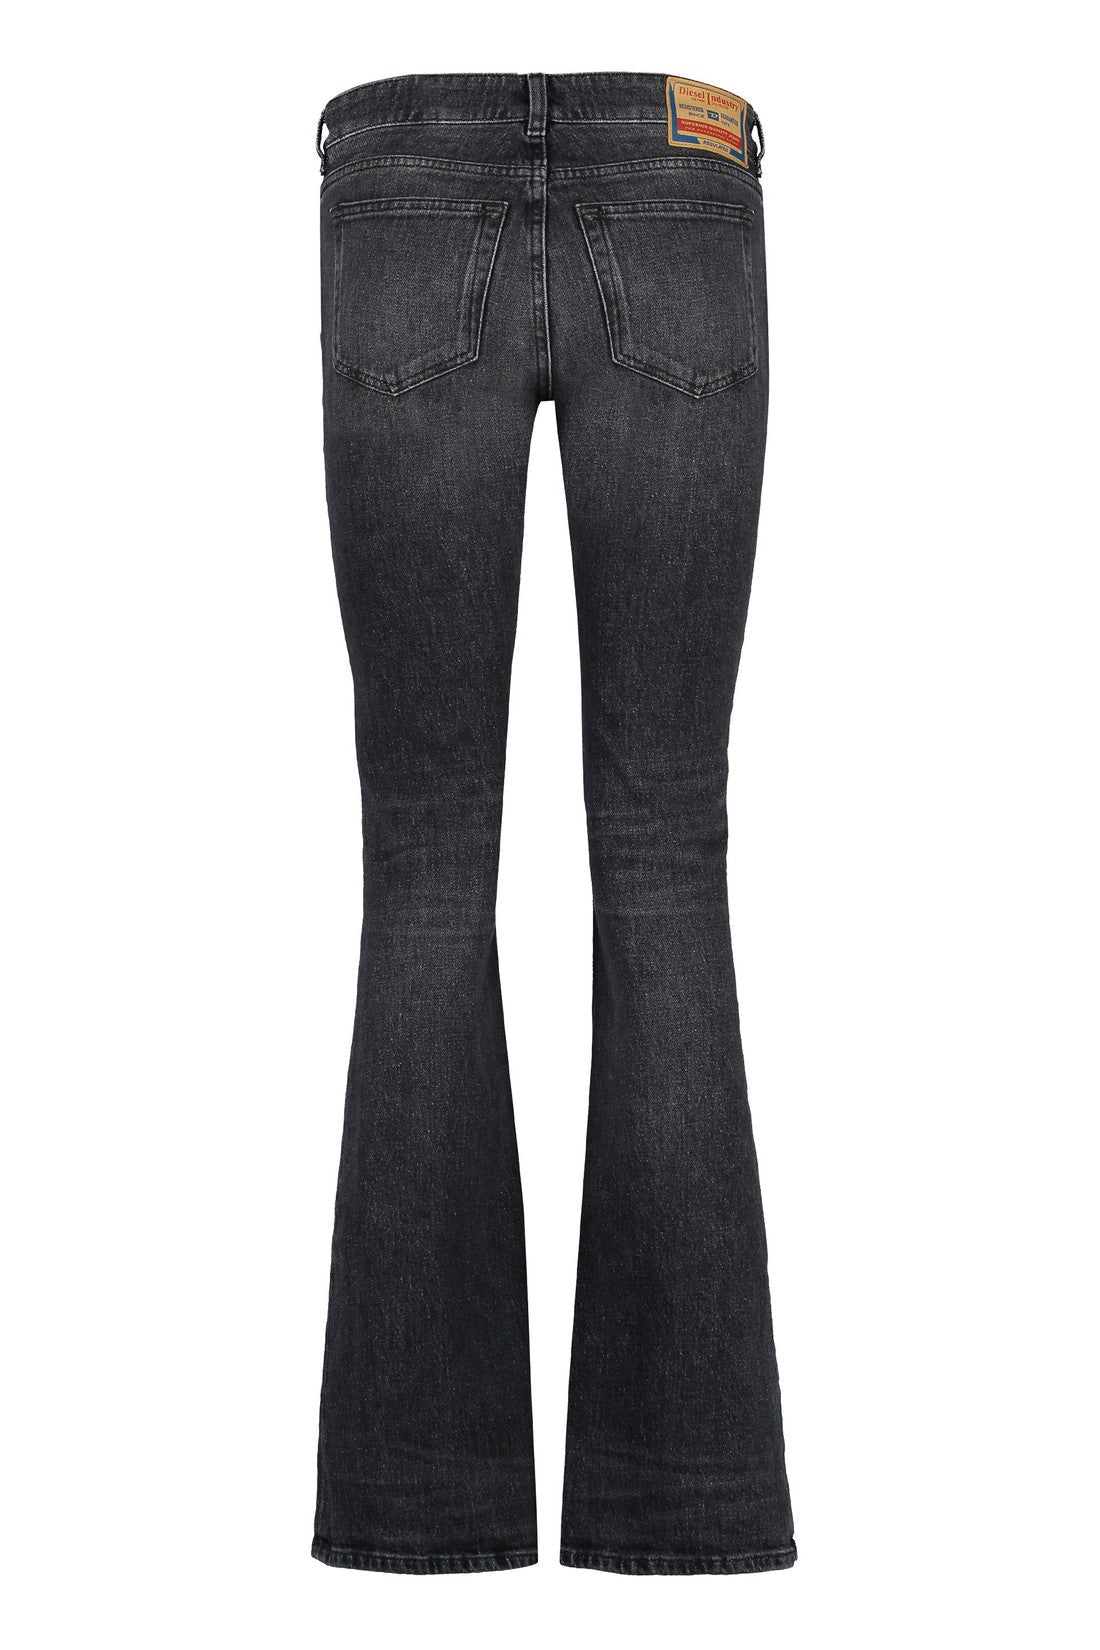 DIESEL-OUTLET-SALE-1969 D-Ebbey bootcut jeans-ARCHIVIST